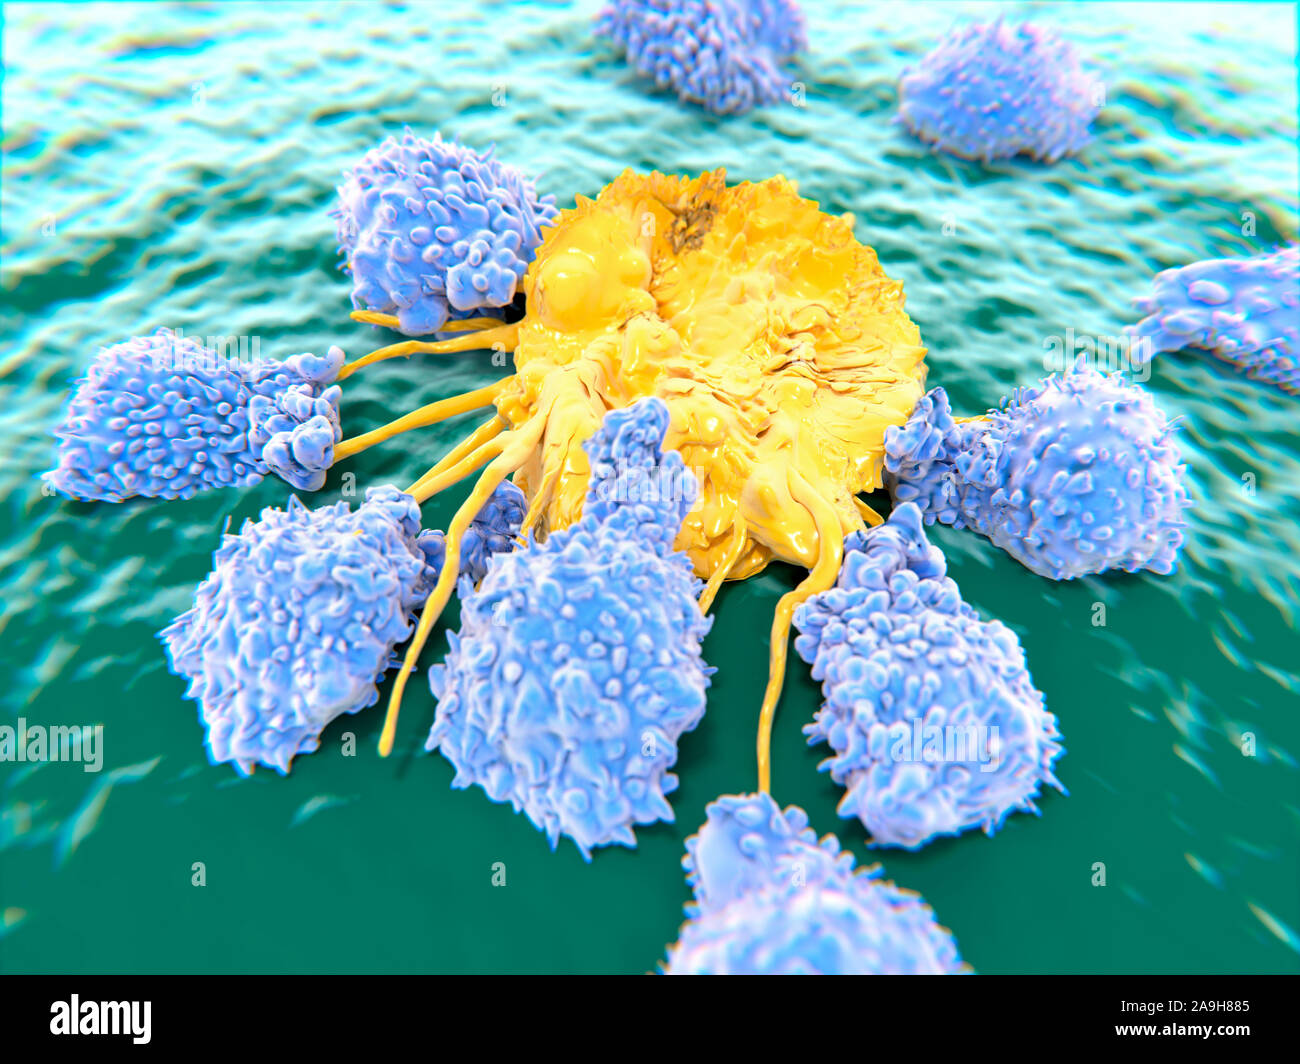 Les lymphocytes qui attaquent une cellule cancéreuse, illustration Banque D'Images